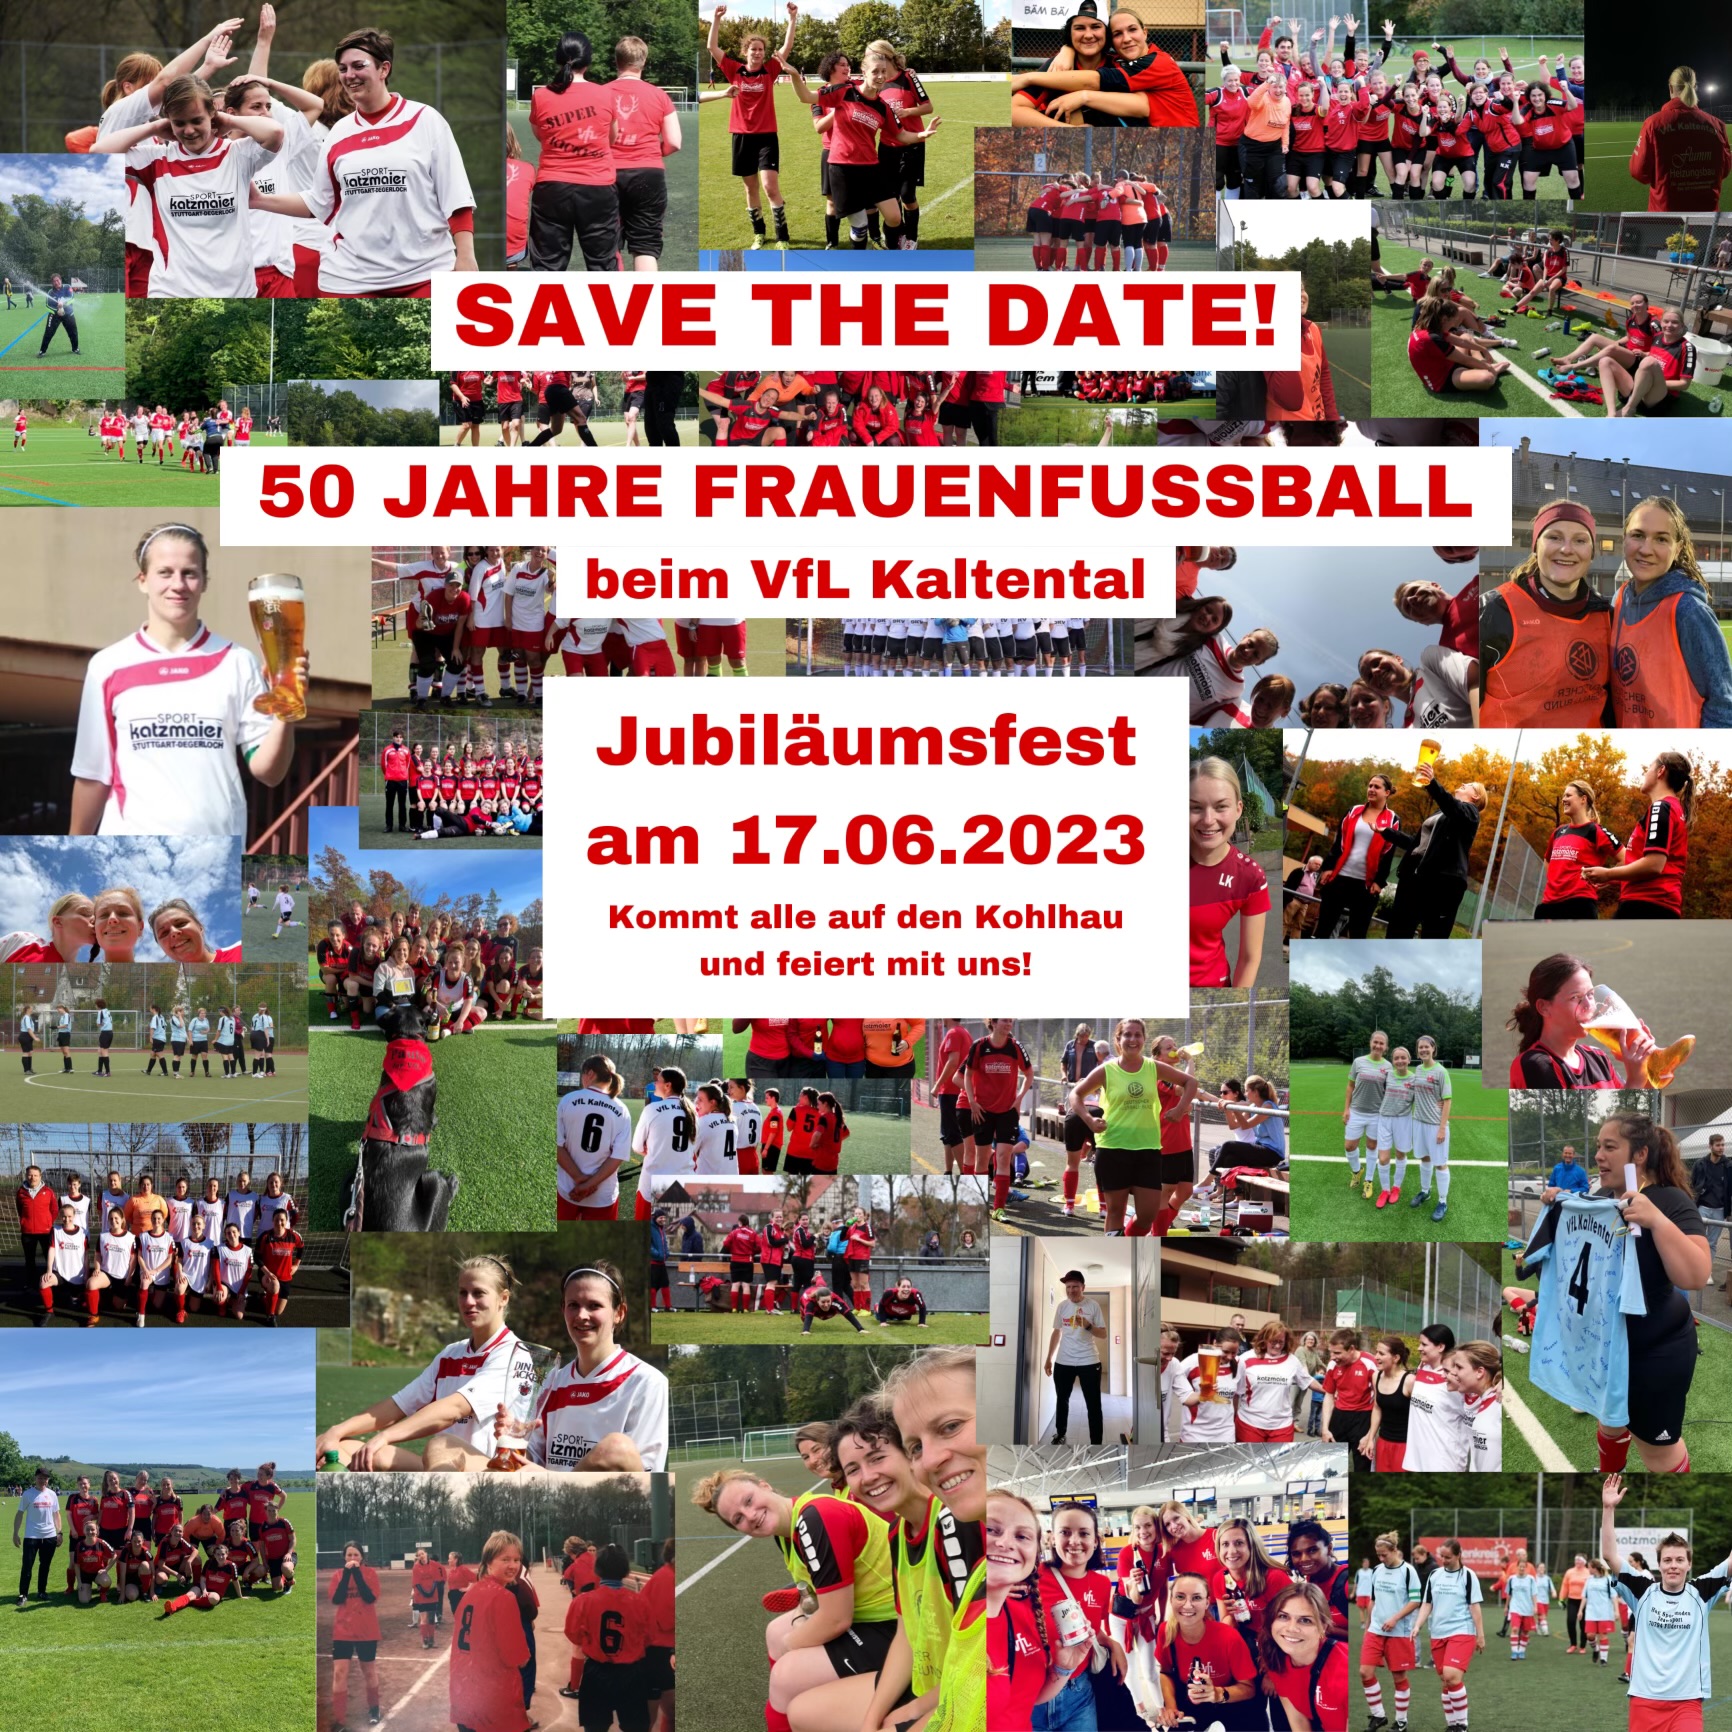 Save the date! 50 Jahre Frauenfussball beim VfL Kaltental. Jubiläumsfest am 17.06.2022.